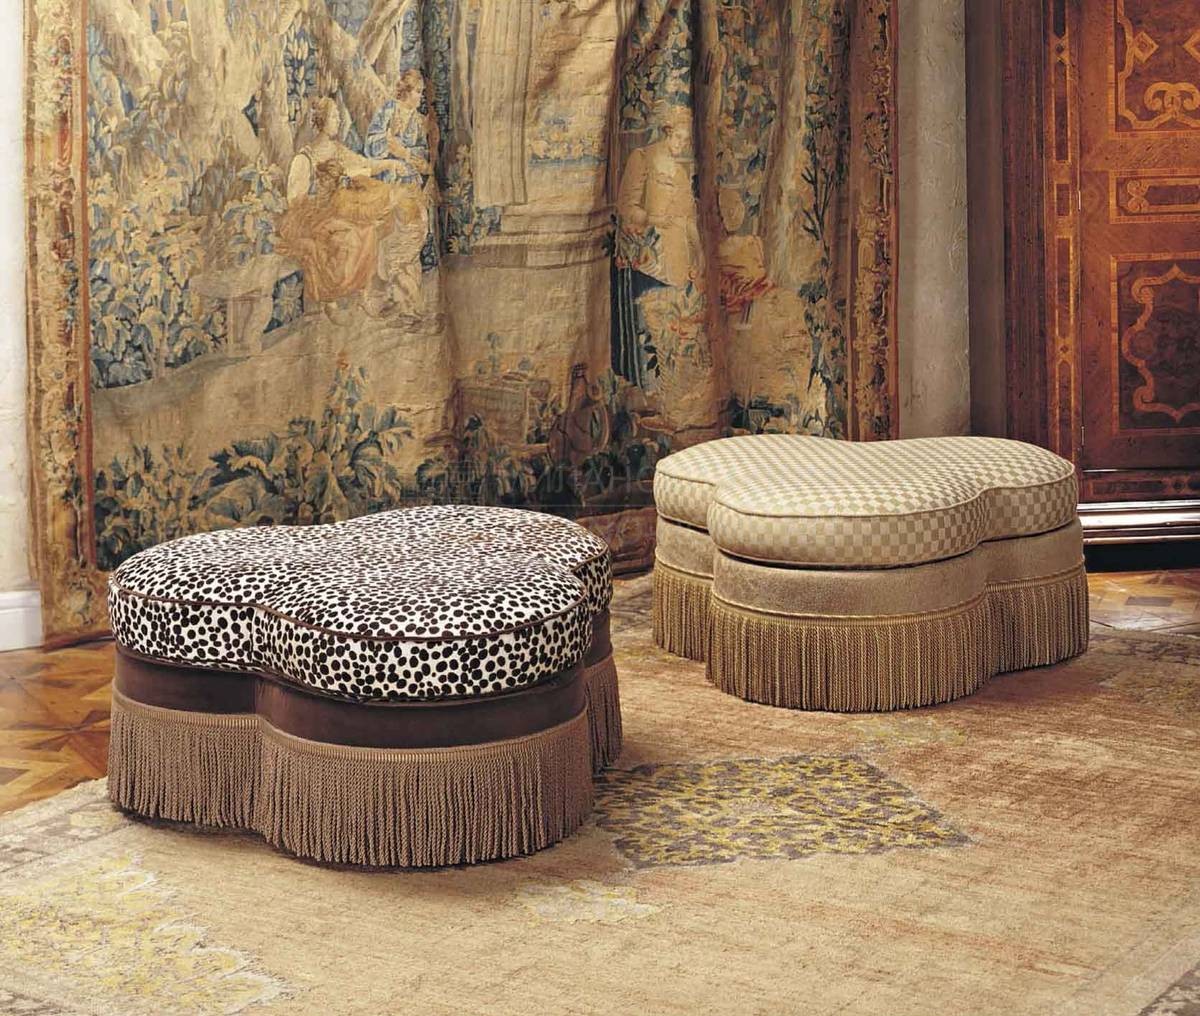 Пуфы The Upholstery/S393 из Италии фабрики FRANCESCO MOLON